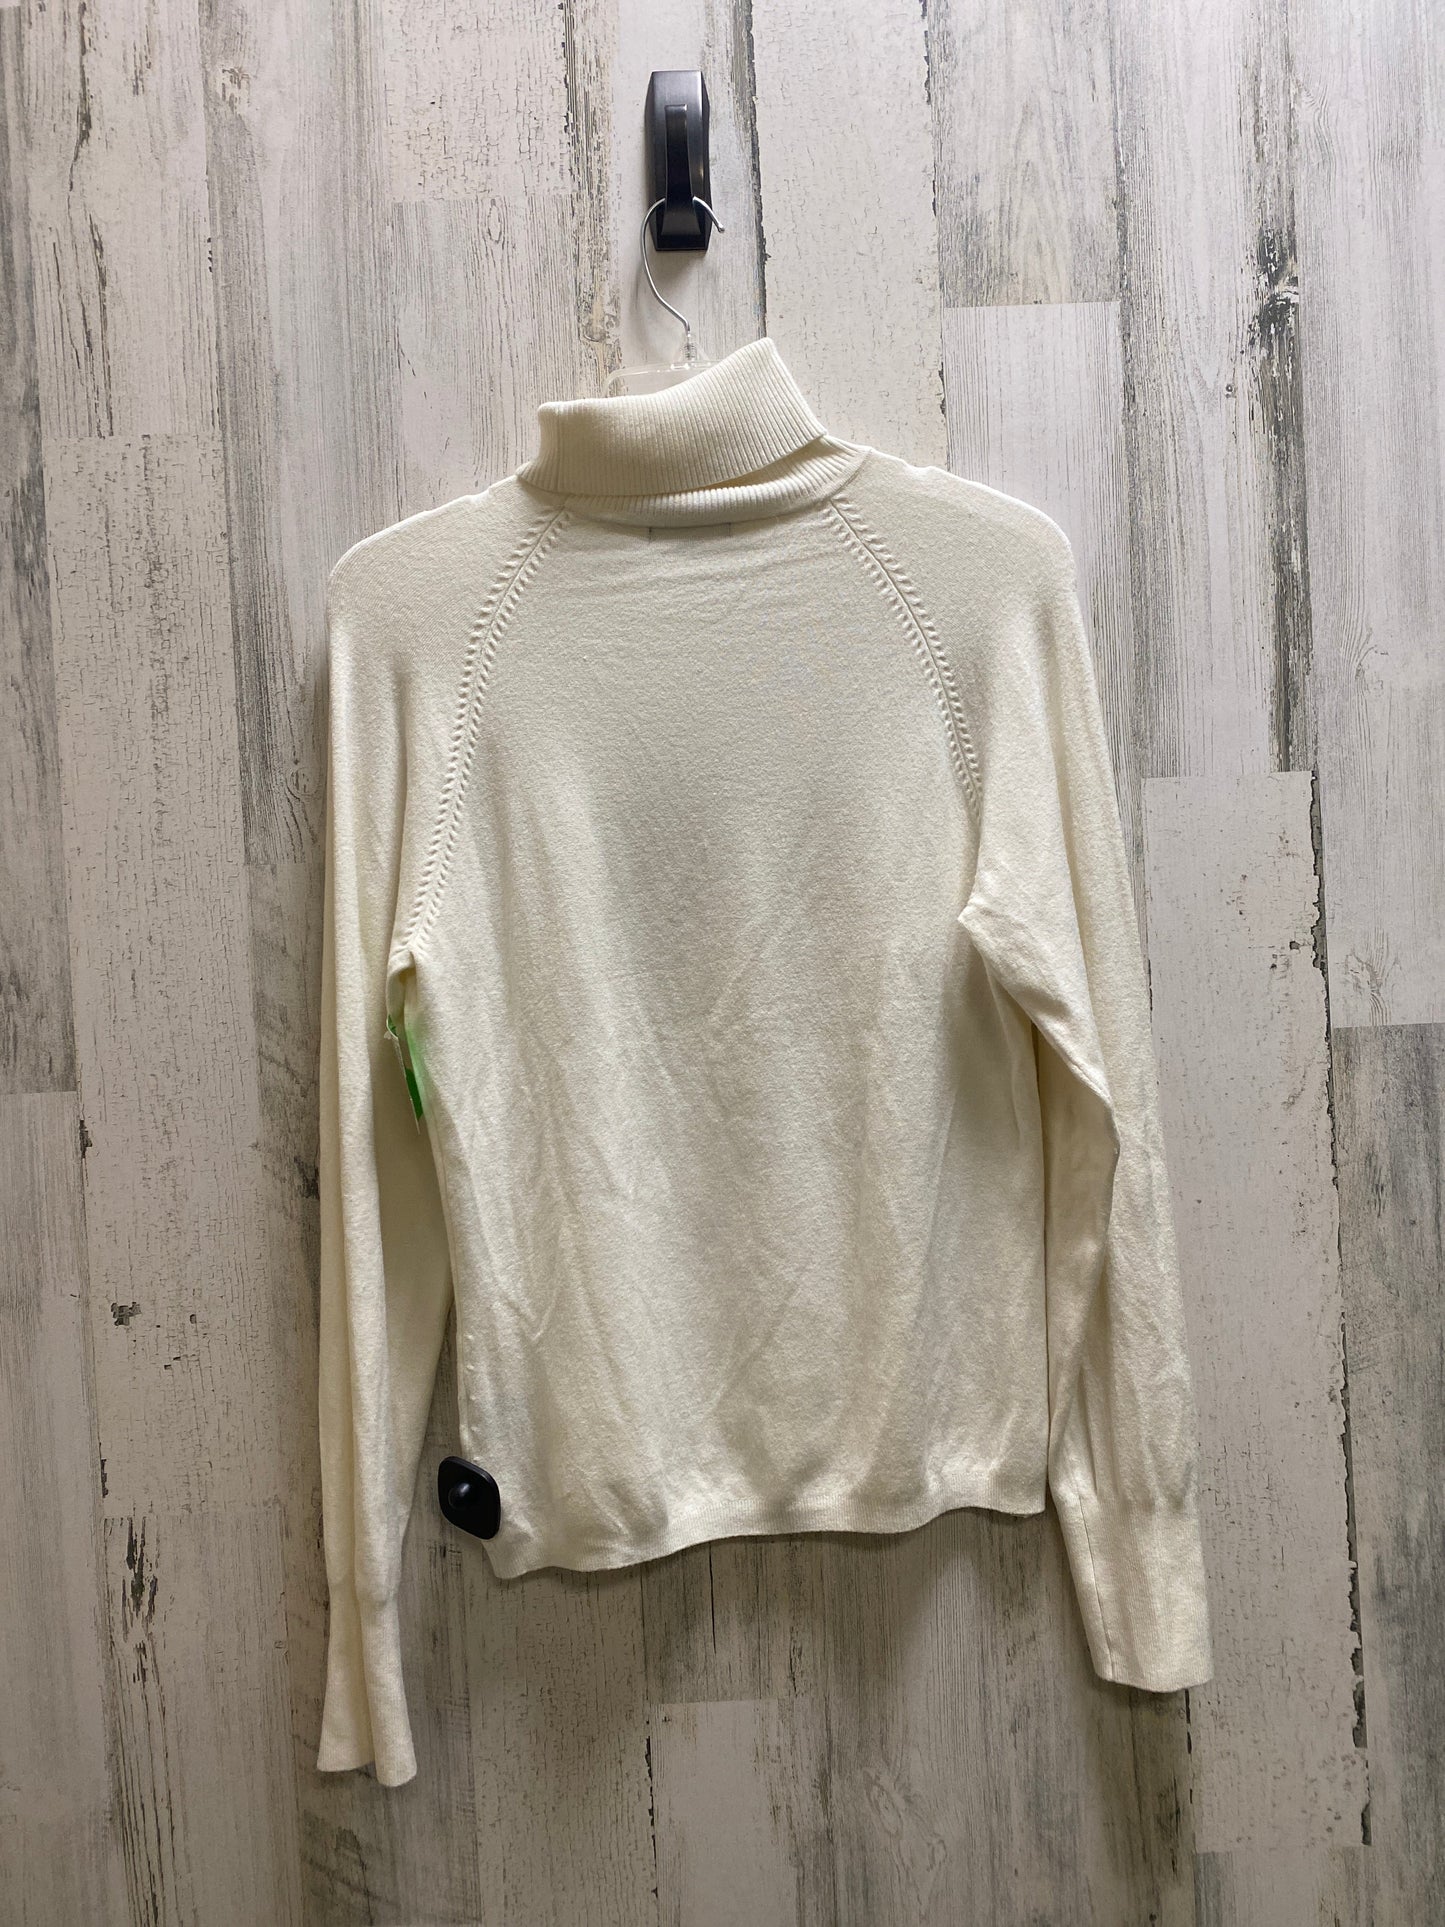 Sweater By Bcbgmaxazria  Size: Xl